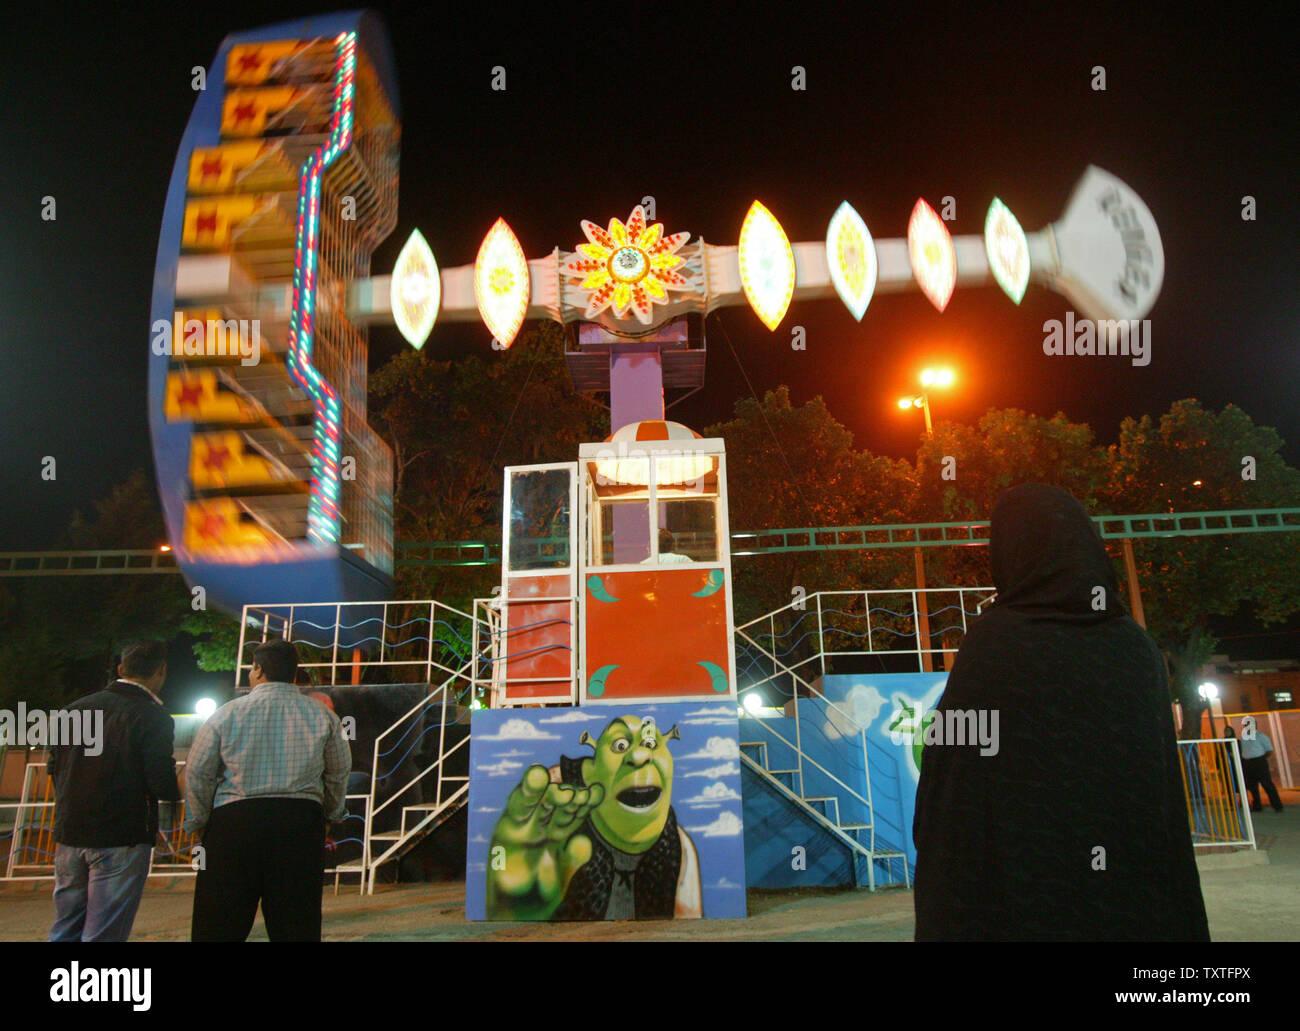 Iraner betrachten einen Carnival ride dekoriert mit einem Bild von Shrek amerikanischen Shrek (C) in Mellat Park in der Provinz Qazvin gesehen wird, 91 Meilen (165 km) westlich von Teheran, Iran am 21. Mai 2008. Die iranische Justiz offizielle warnte vor der "estructive' sozial-kulturellen Folgen der Barbie Puppen und anderen westlichen Spielzeug. Generalstaatsanwalt Ghorban Ali Dori Najafabadi sagte in einem offiziellen Schreiben an Vizepräsident Parviz Davoudi, dass die Puppe und andere westliche Spielwaren sind ein 'Gefahr', dass muss gestoppt werden, USA heute berichtet. (UPI Foto/Mohammad Kheirkhah) Stockfoto